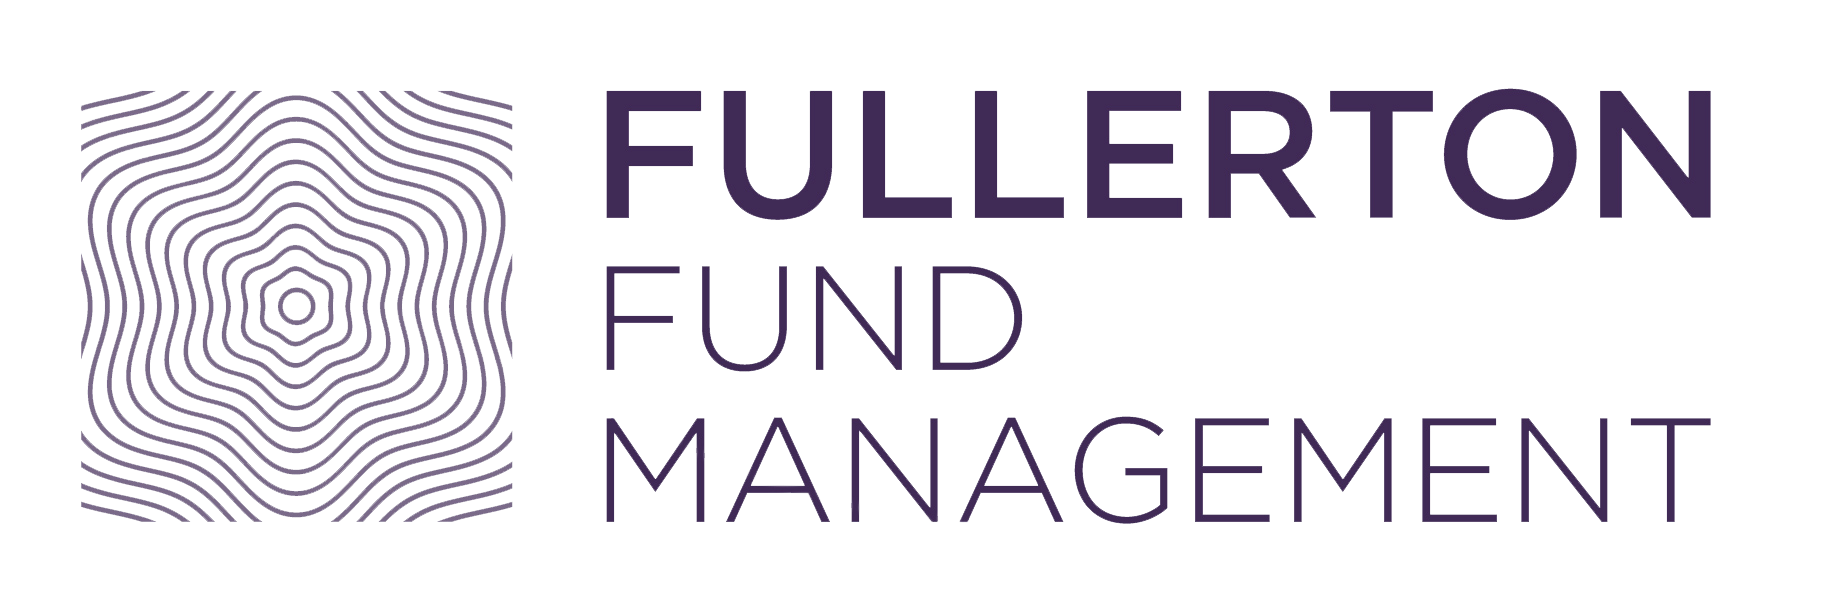 Fullerton USD Income Fund